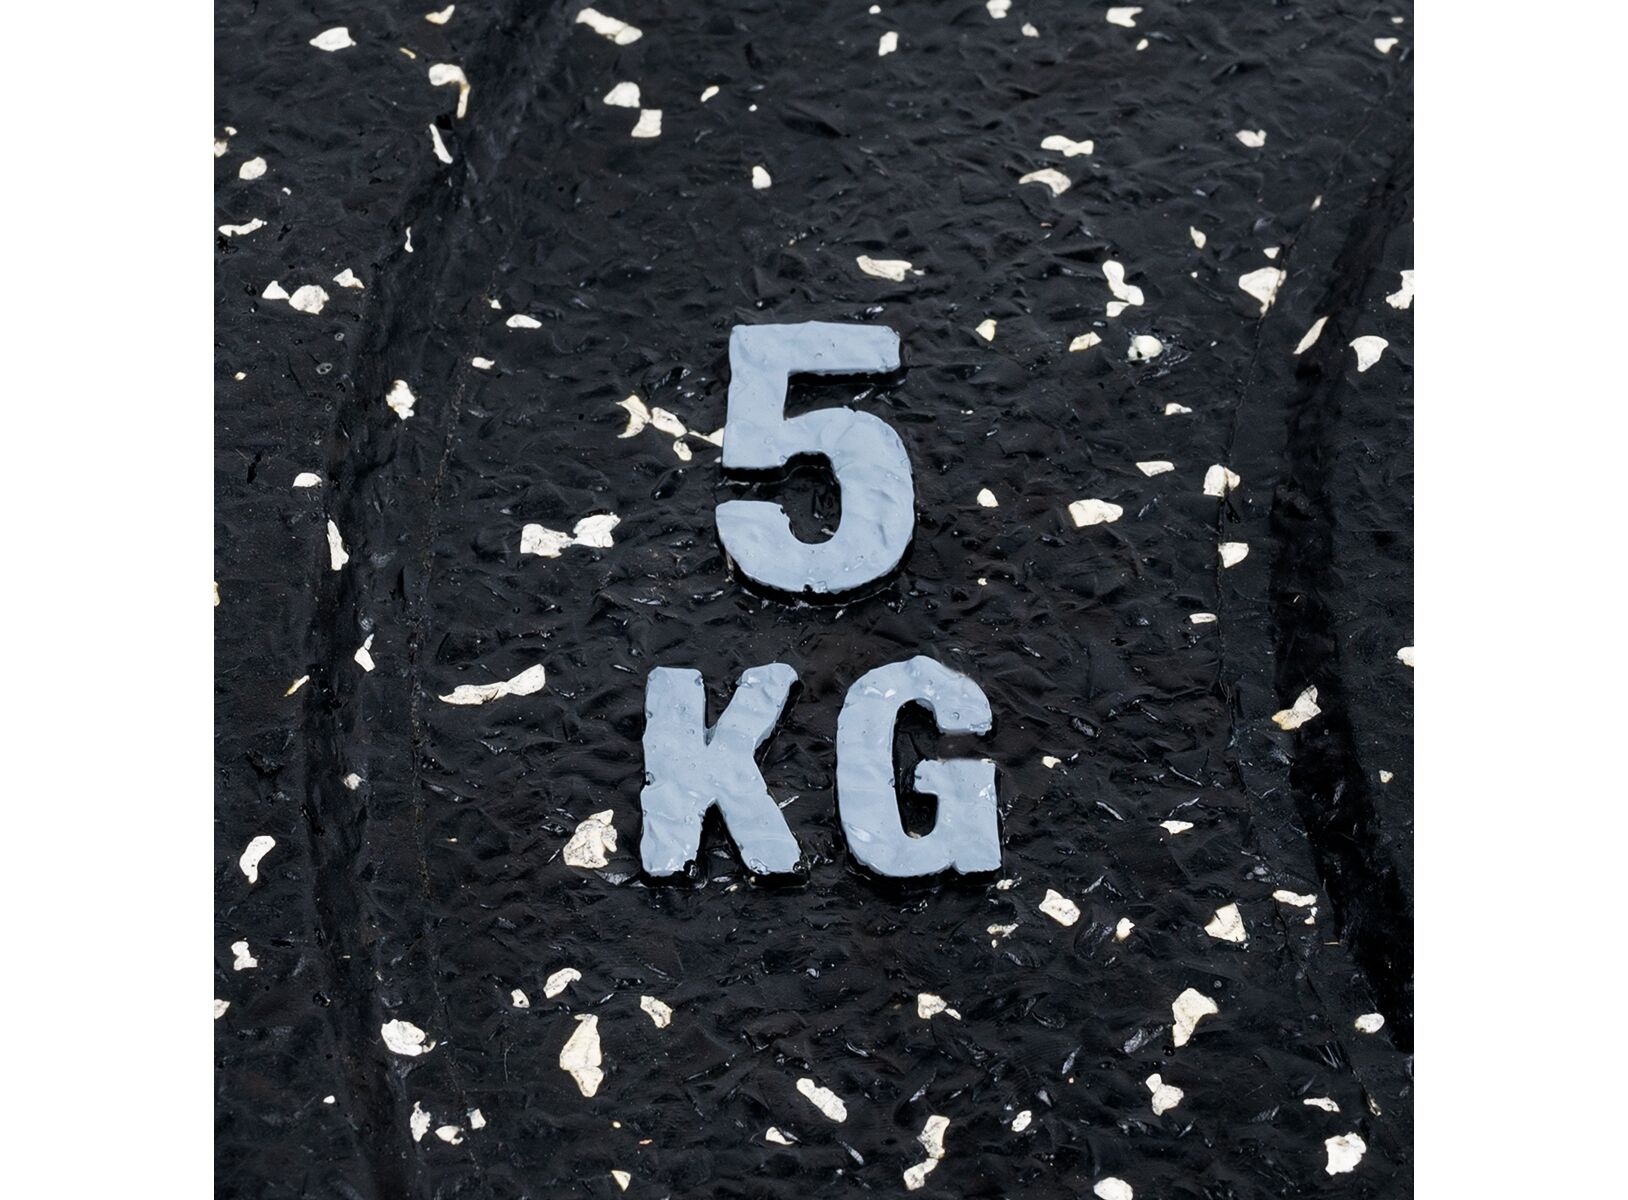 Disque Olympique - Diamètre 51mm Poids Olympique WOD 10kg FIT AND RACK  Moucheté Vert 10kg- FitnessBoutique